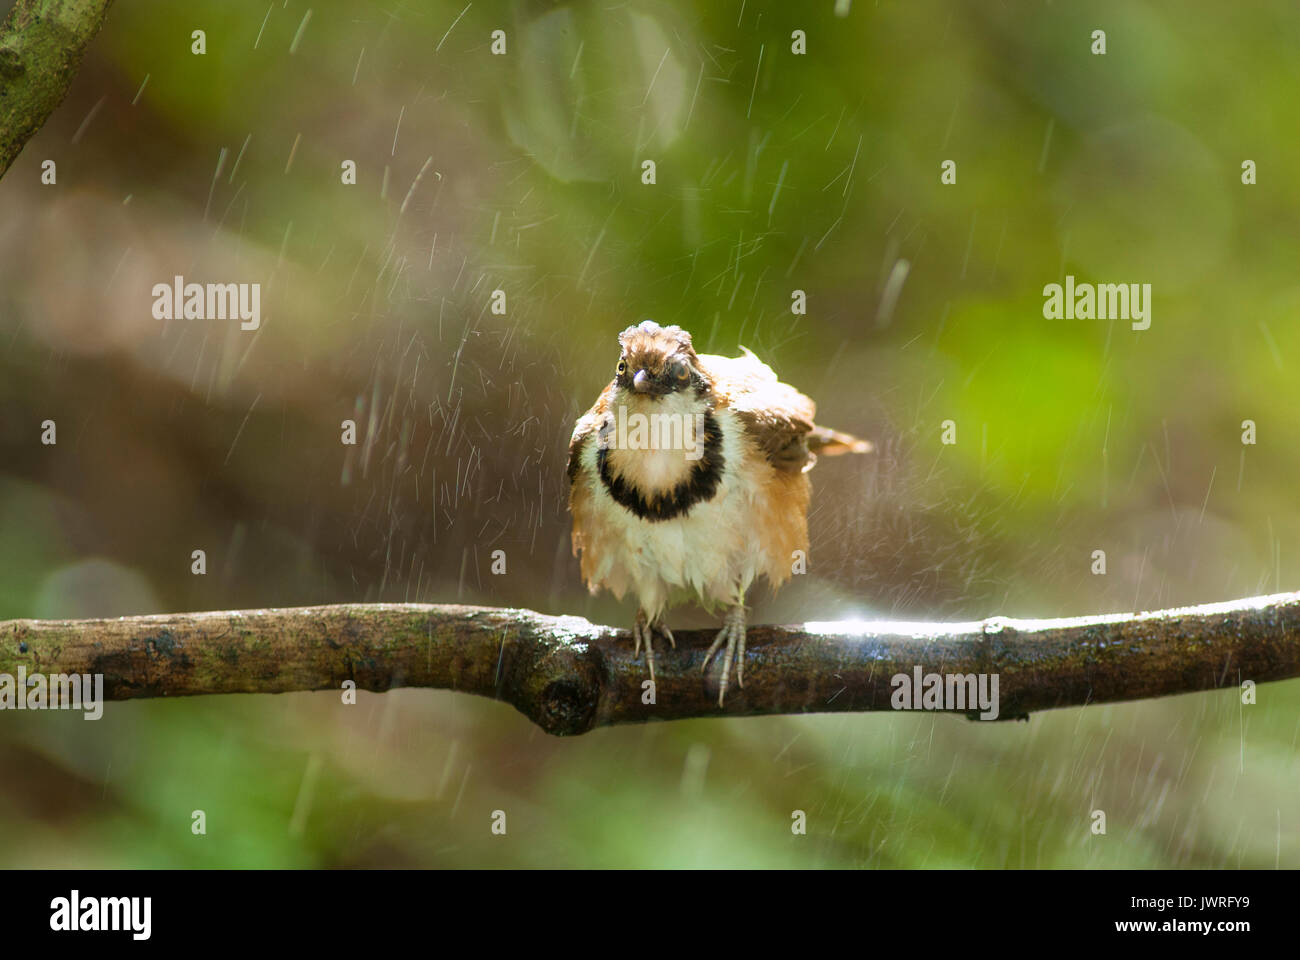 A beautiful bird in the wild Asia.In the rain. Stock Photo